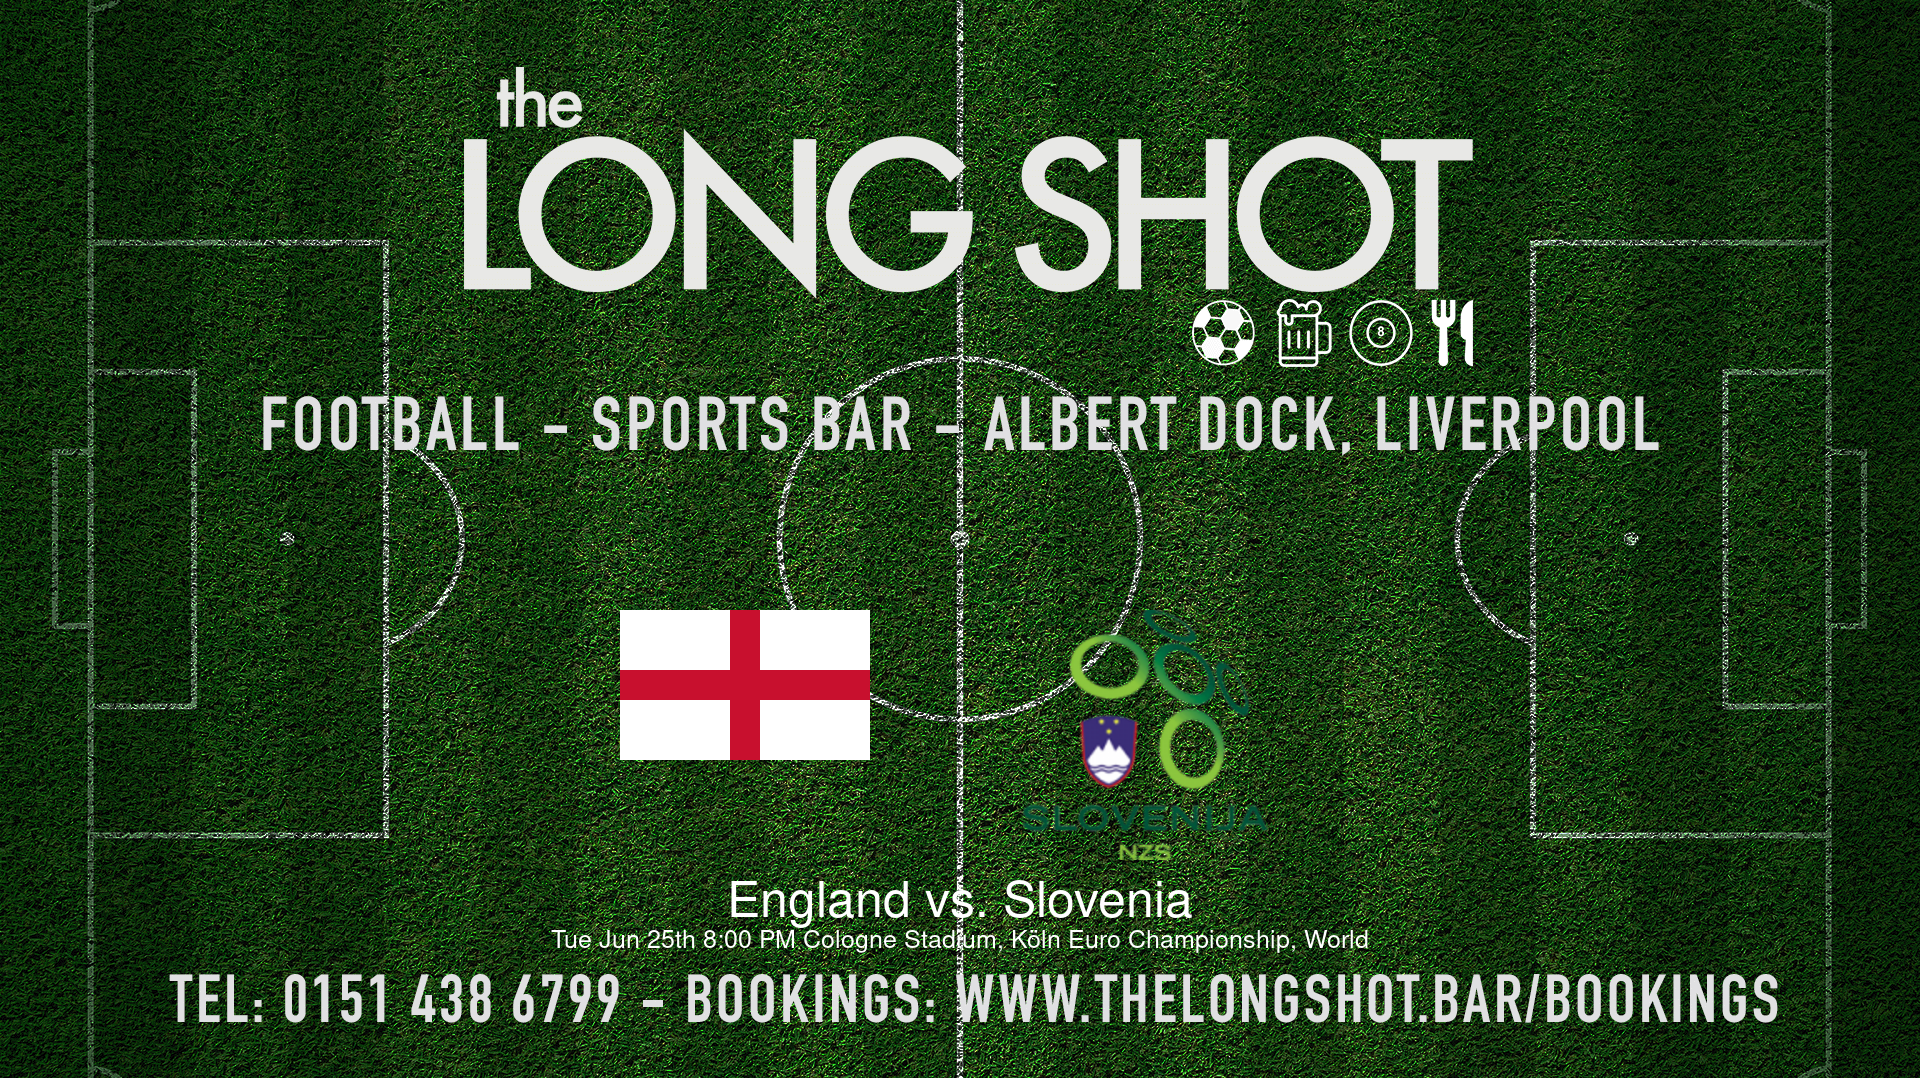 Event image - England vs. Slovenia